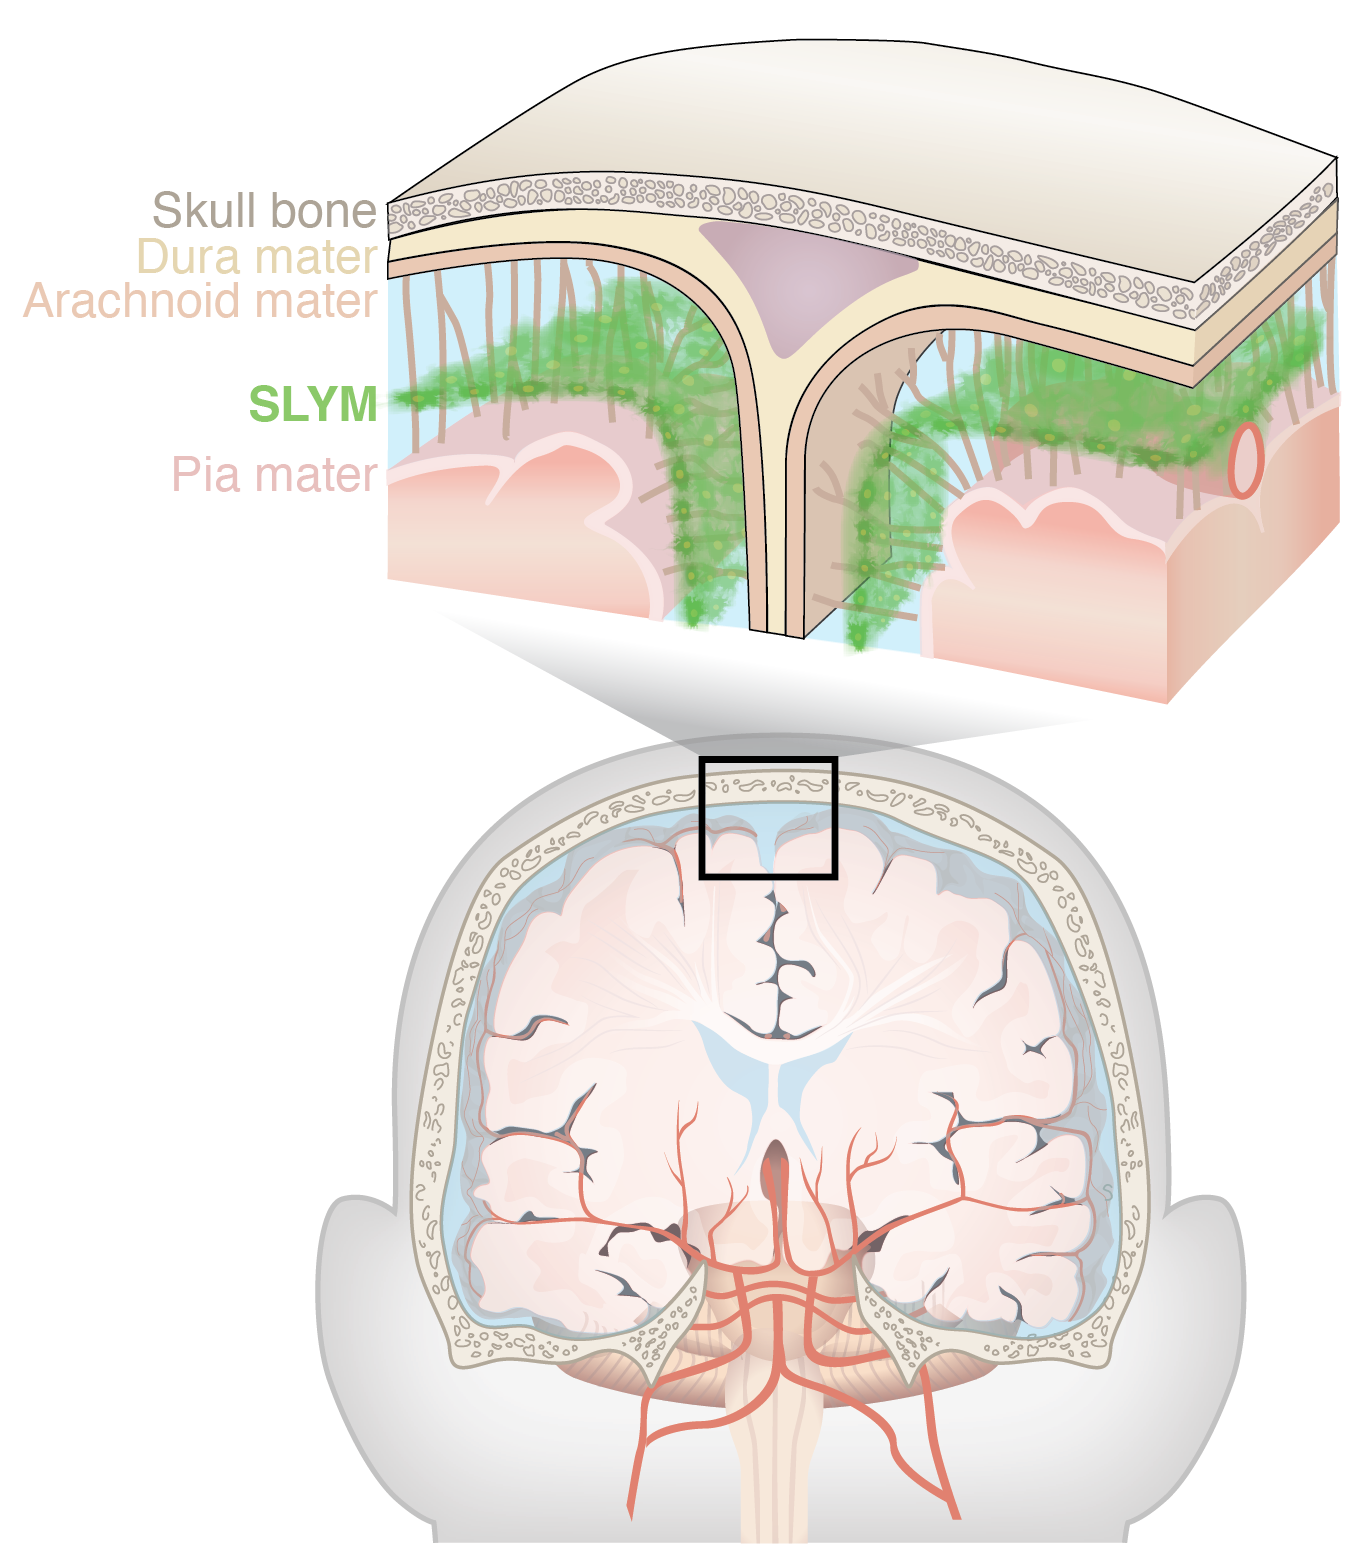 La nueva capa se llama SLYM, y actúa como una plataforma desde la cual las células inmunitarias pueden monitorear al cerebro (Science)